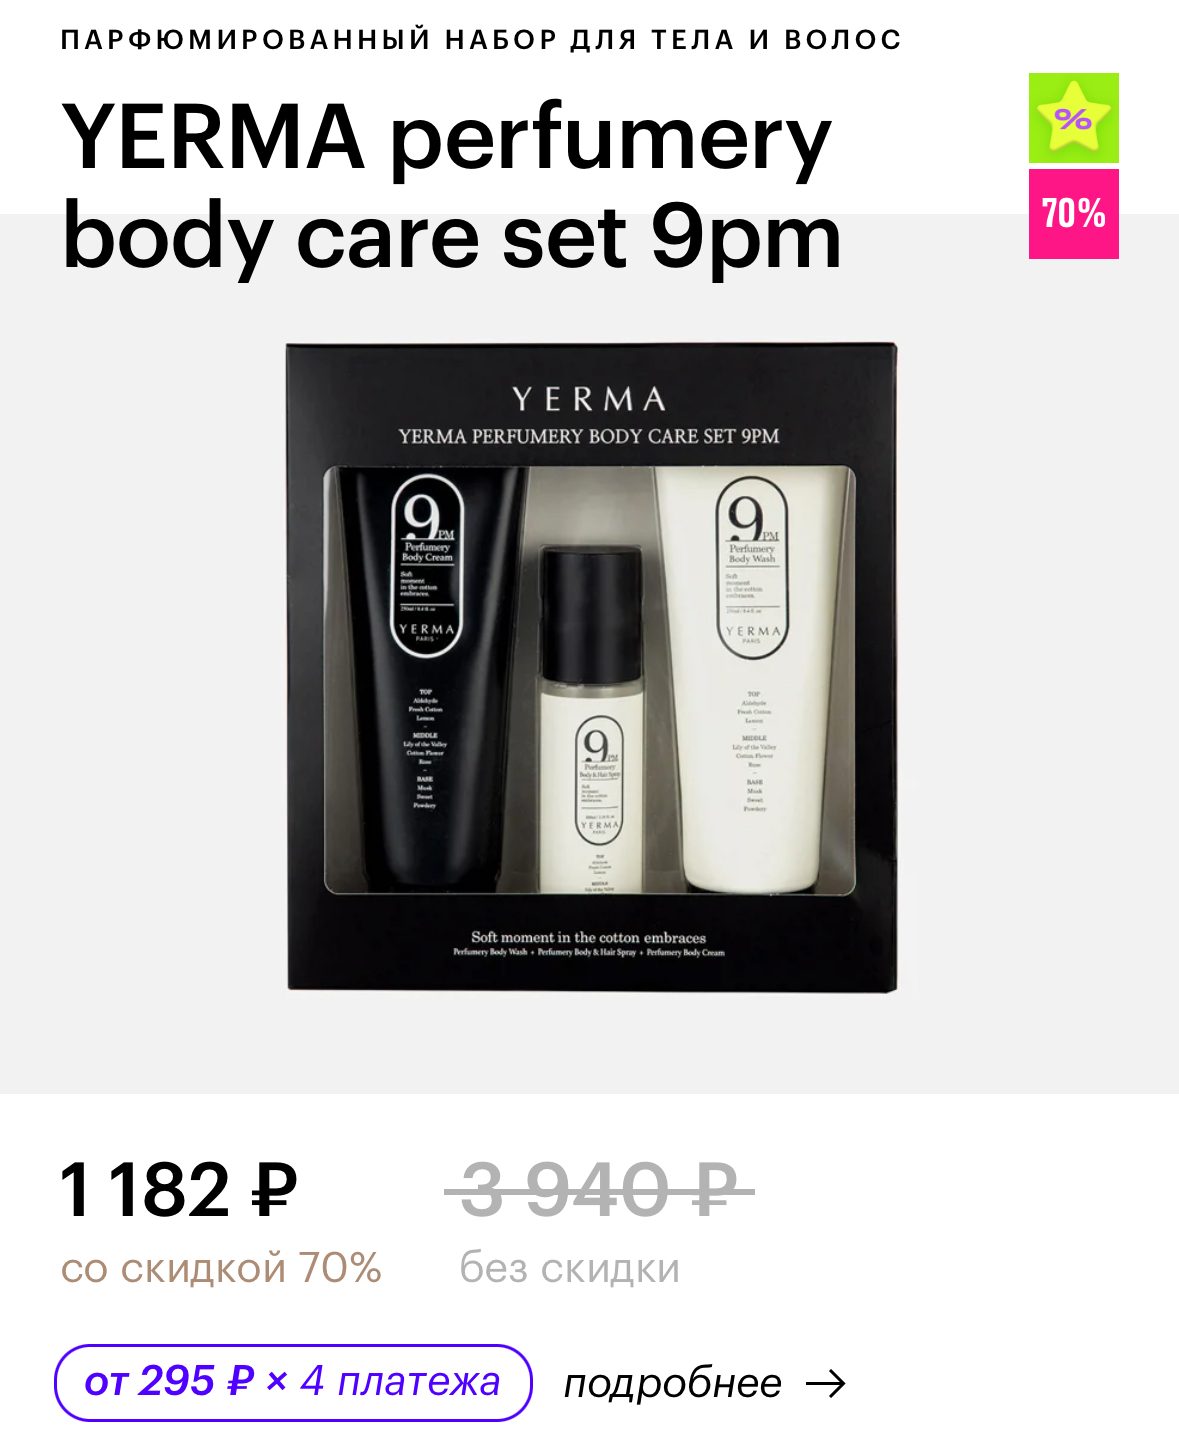 YERMA perfumery body care set 9pm